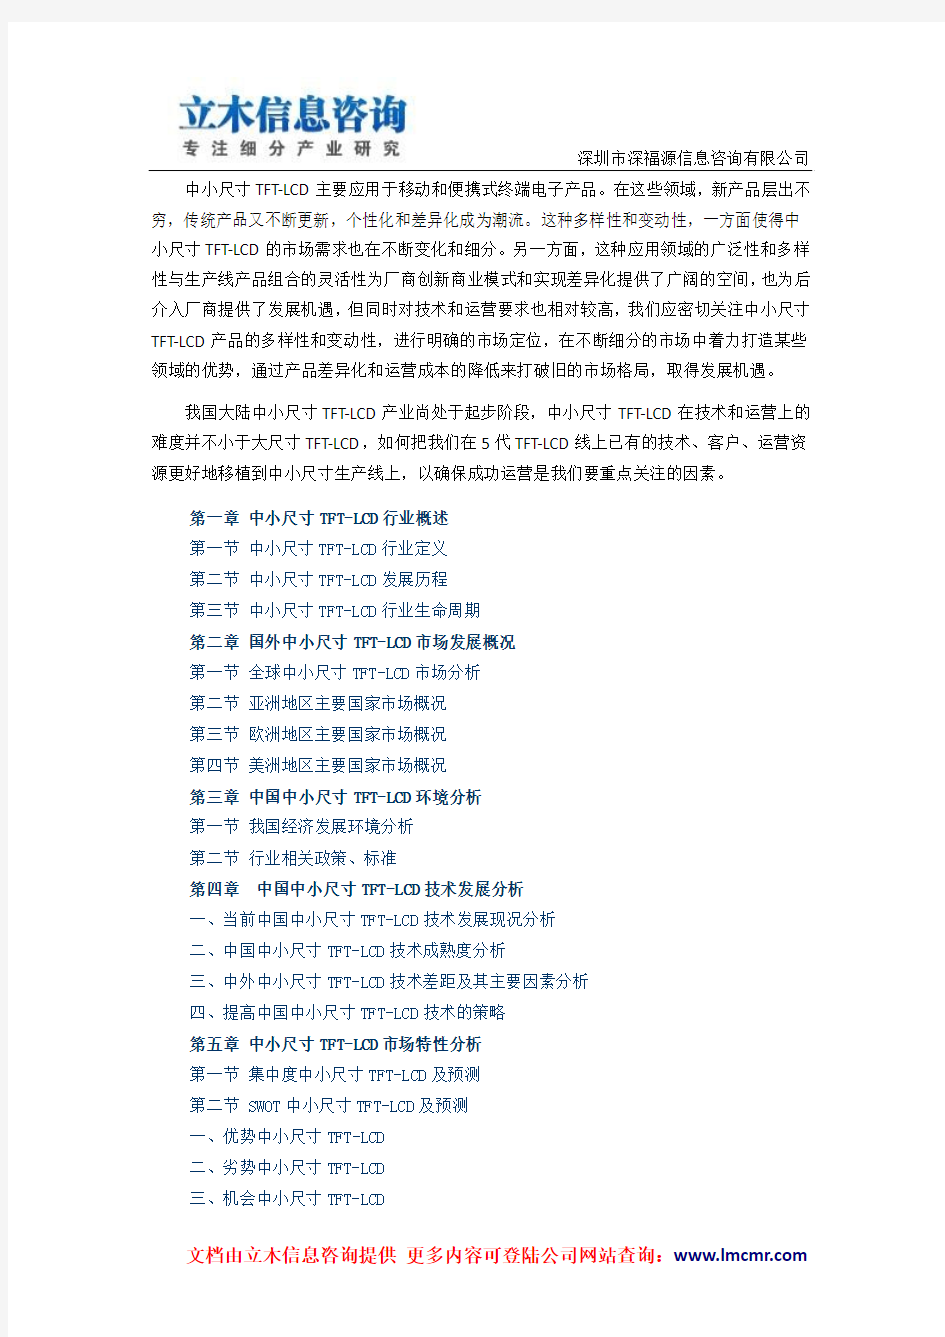 中国中小尺寸TFT-LCD市场分析预测与战略咨询研究报告(2013版)